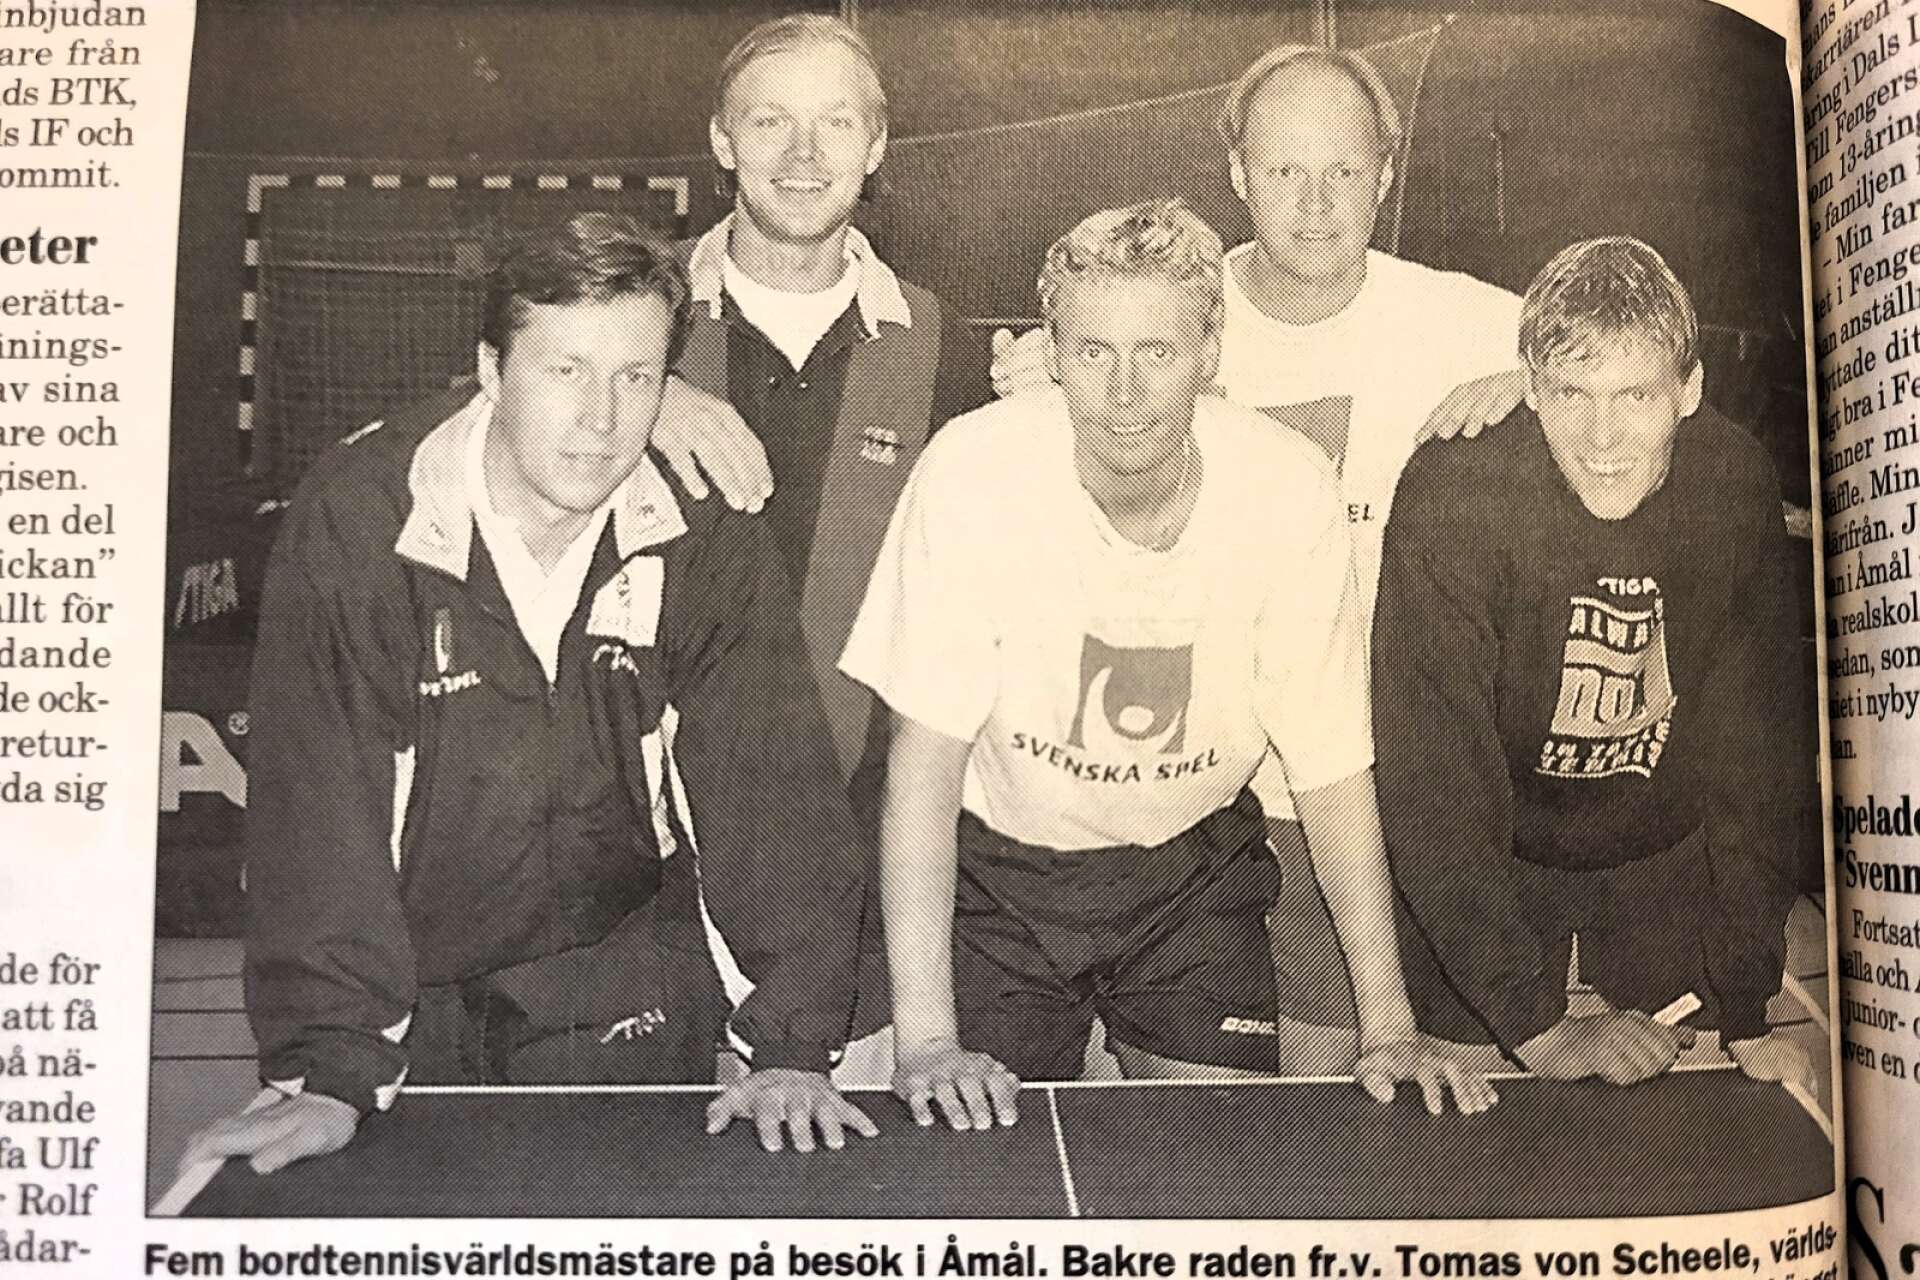 Fem bordtennisvärldsmästare på besök i Åmål. Bakre raden fr.v. Tomas von Scheele, världsmästare i herrdubbel 1991, Ulf ”Tickan” Carlsson herrdubbel 1985. Längst fram fr.v. Jan-Ove Waldner, världsmästare i singel 1989 och 1997, samt olympisk mästare 1992, Jörgen Persson, singelvärldsmästare 1986 och Peter Karlsson, världsmästare i dubbel 1991.